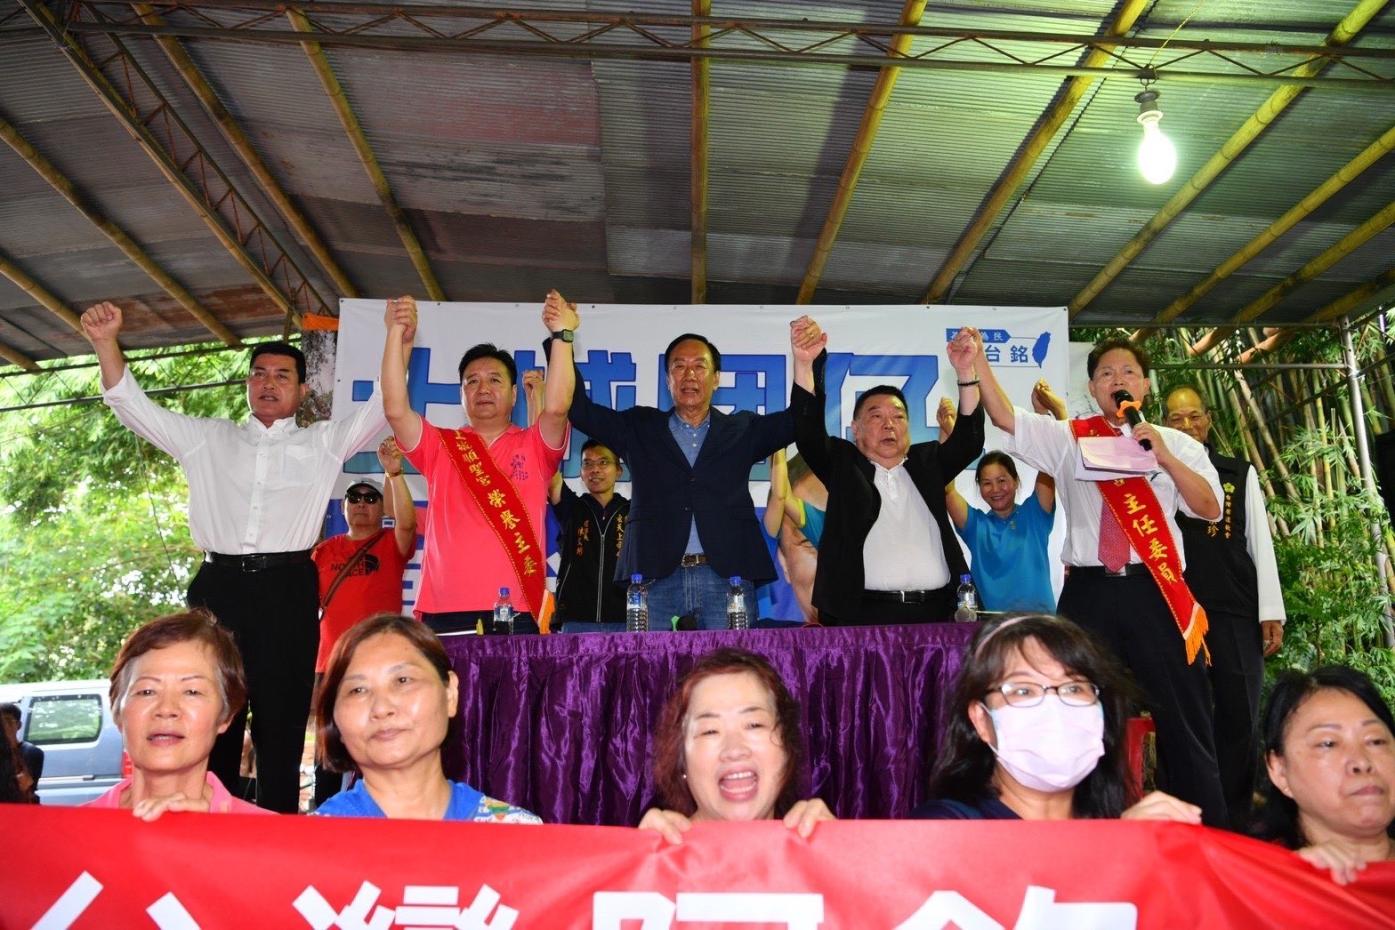 國民黨立委參選人林金結(台上左2)和鴻海創辦人郭台銘(台上左3)參加同場活動，互動密切。郭台銘辦公室提供